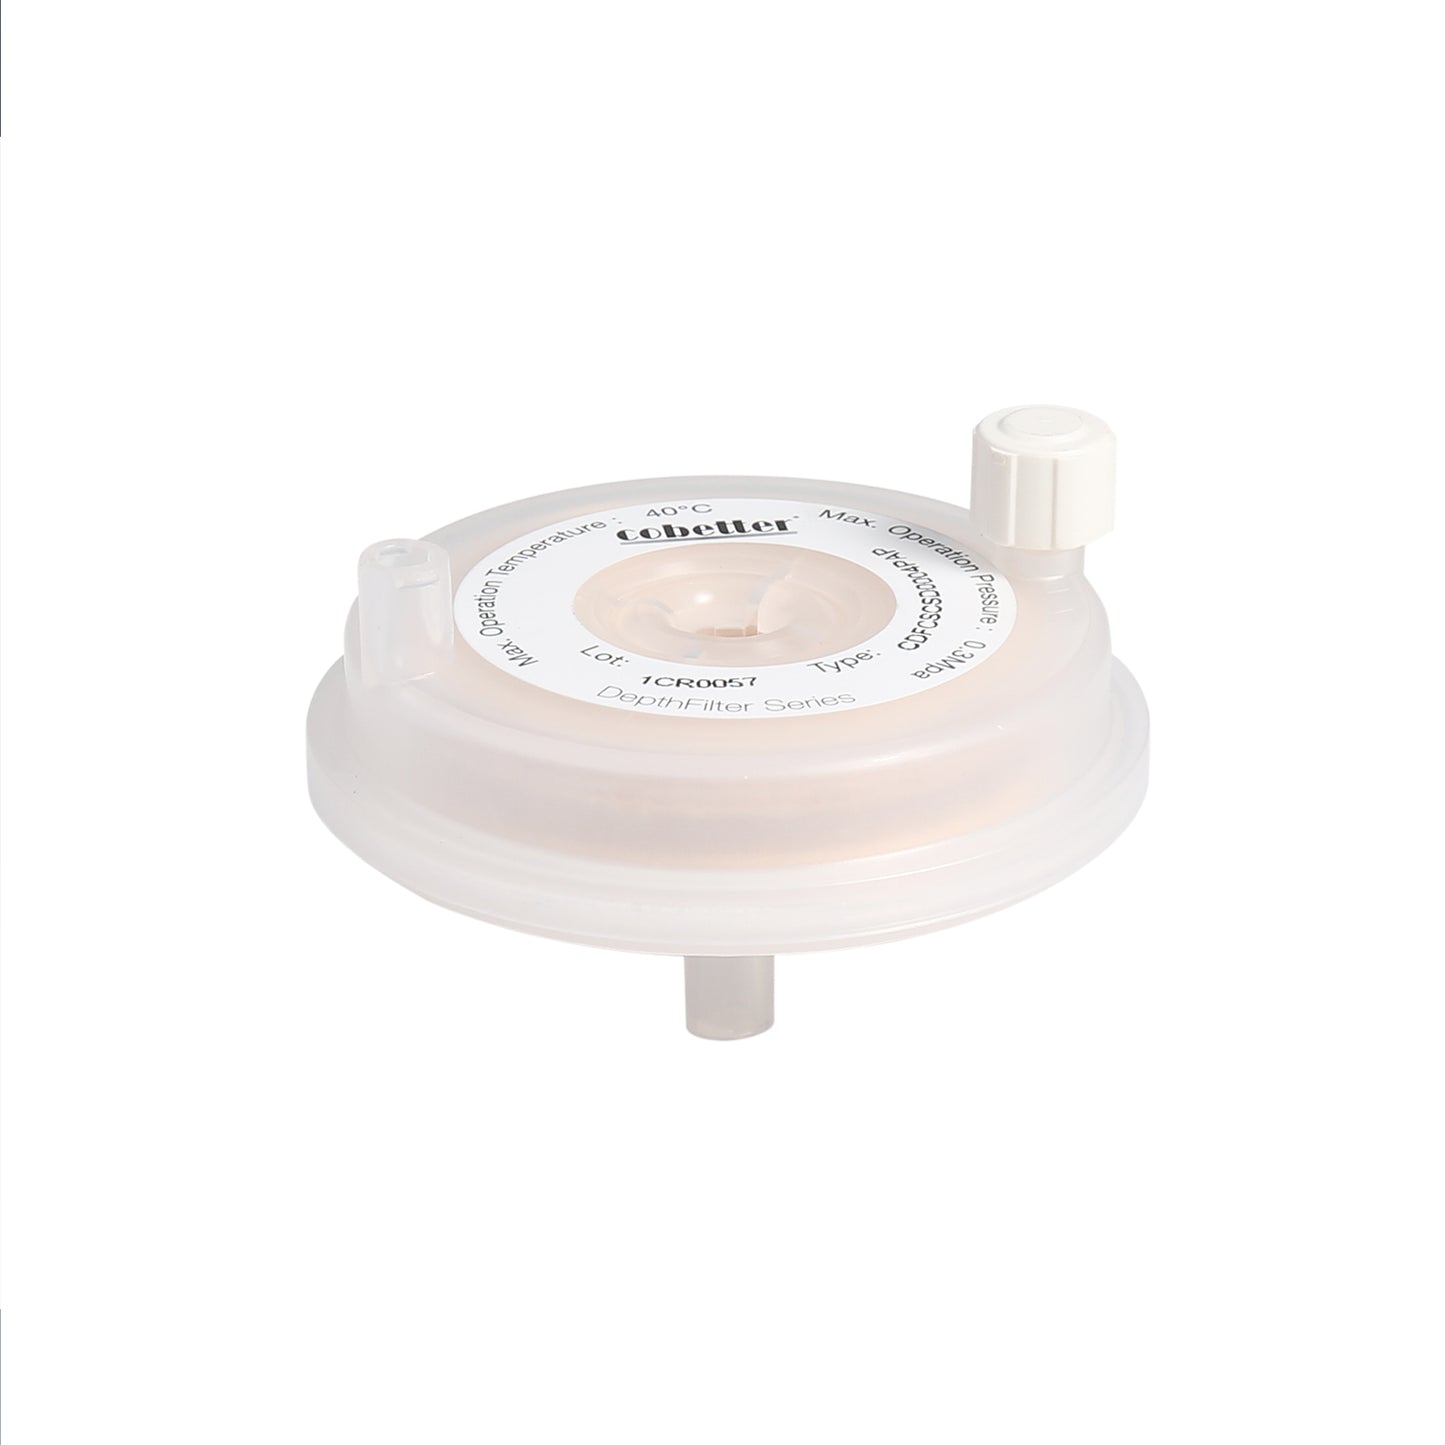 COBETTER Roheap® CSD Claricap Lab Depth Filter Capsule 23cm² EFA